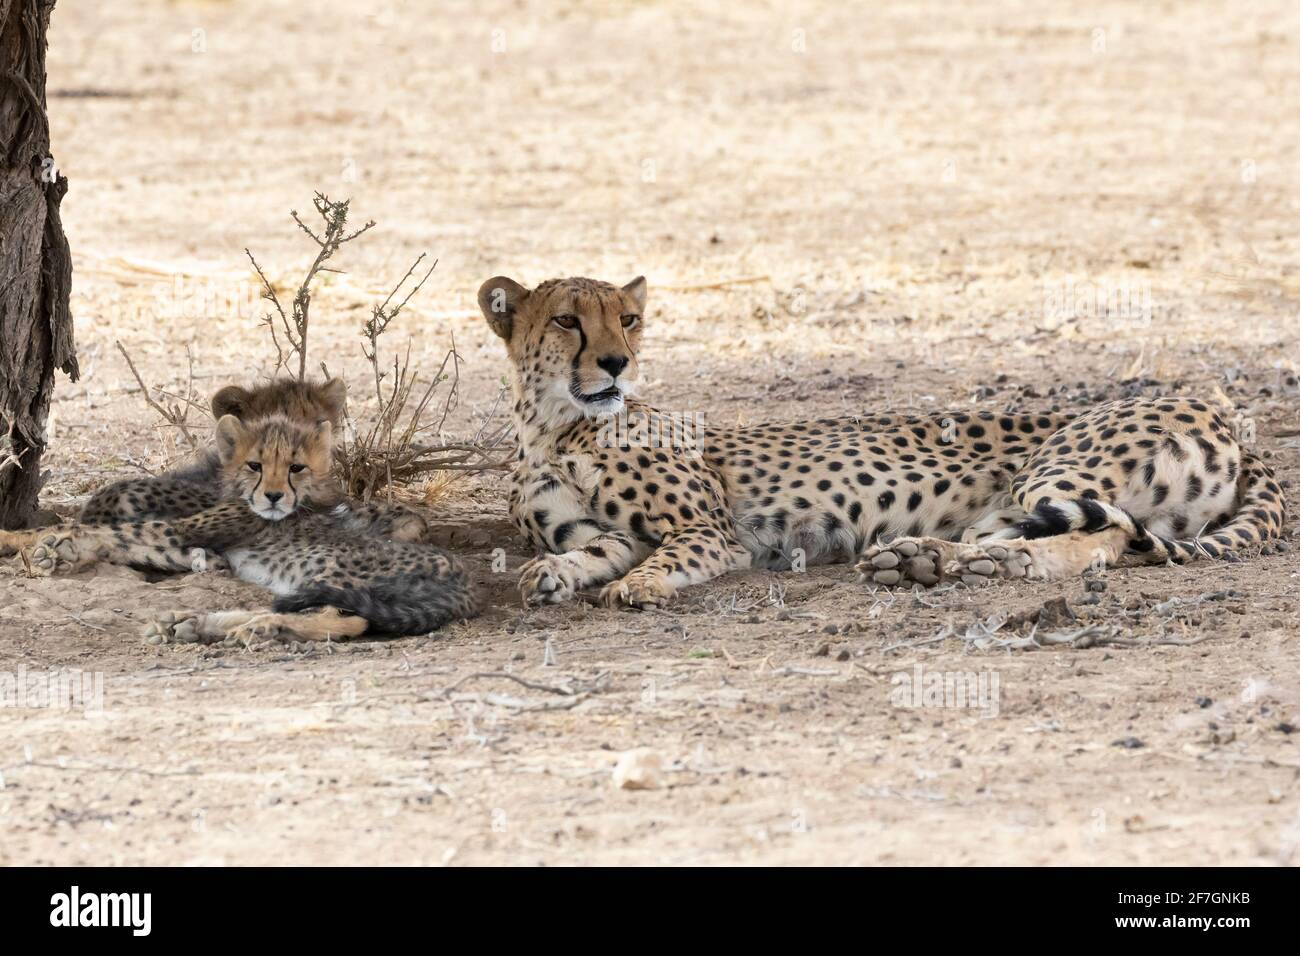 Cheetah (Acinonyx jubatus) mère avec deux petits à l'ombre de l'arbre, Kalahari, Cap du Nord, Afrique du Sud, Cheetah africain sont classés comme vulnérables Banque D'Images